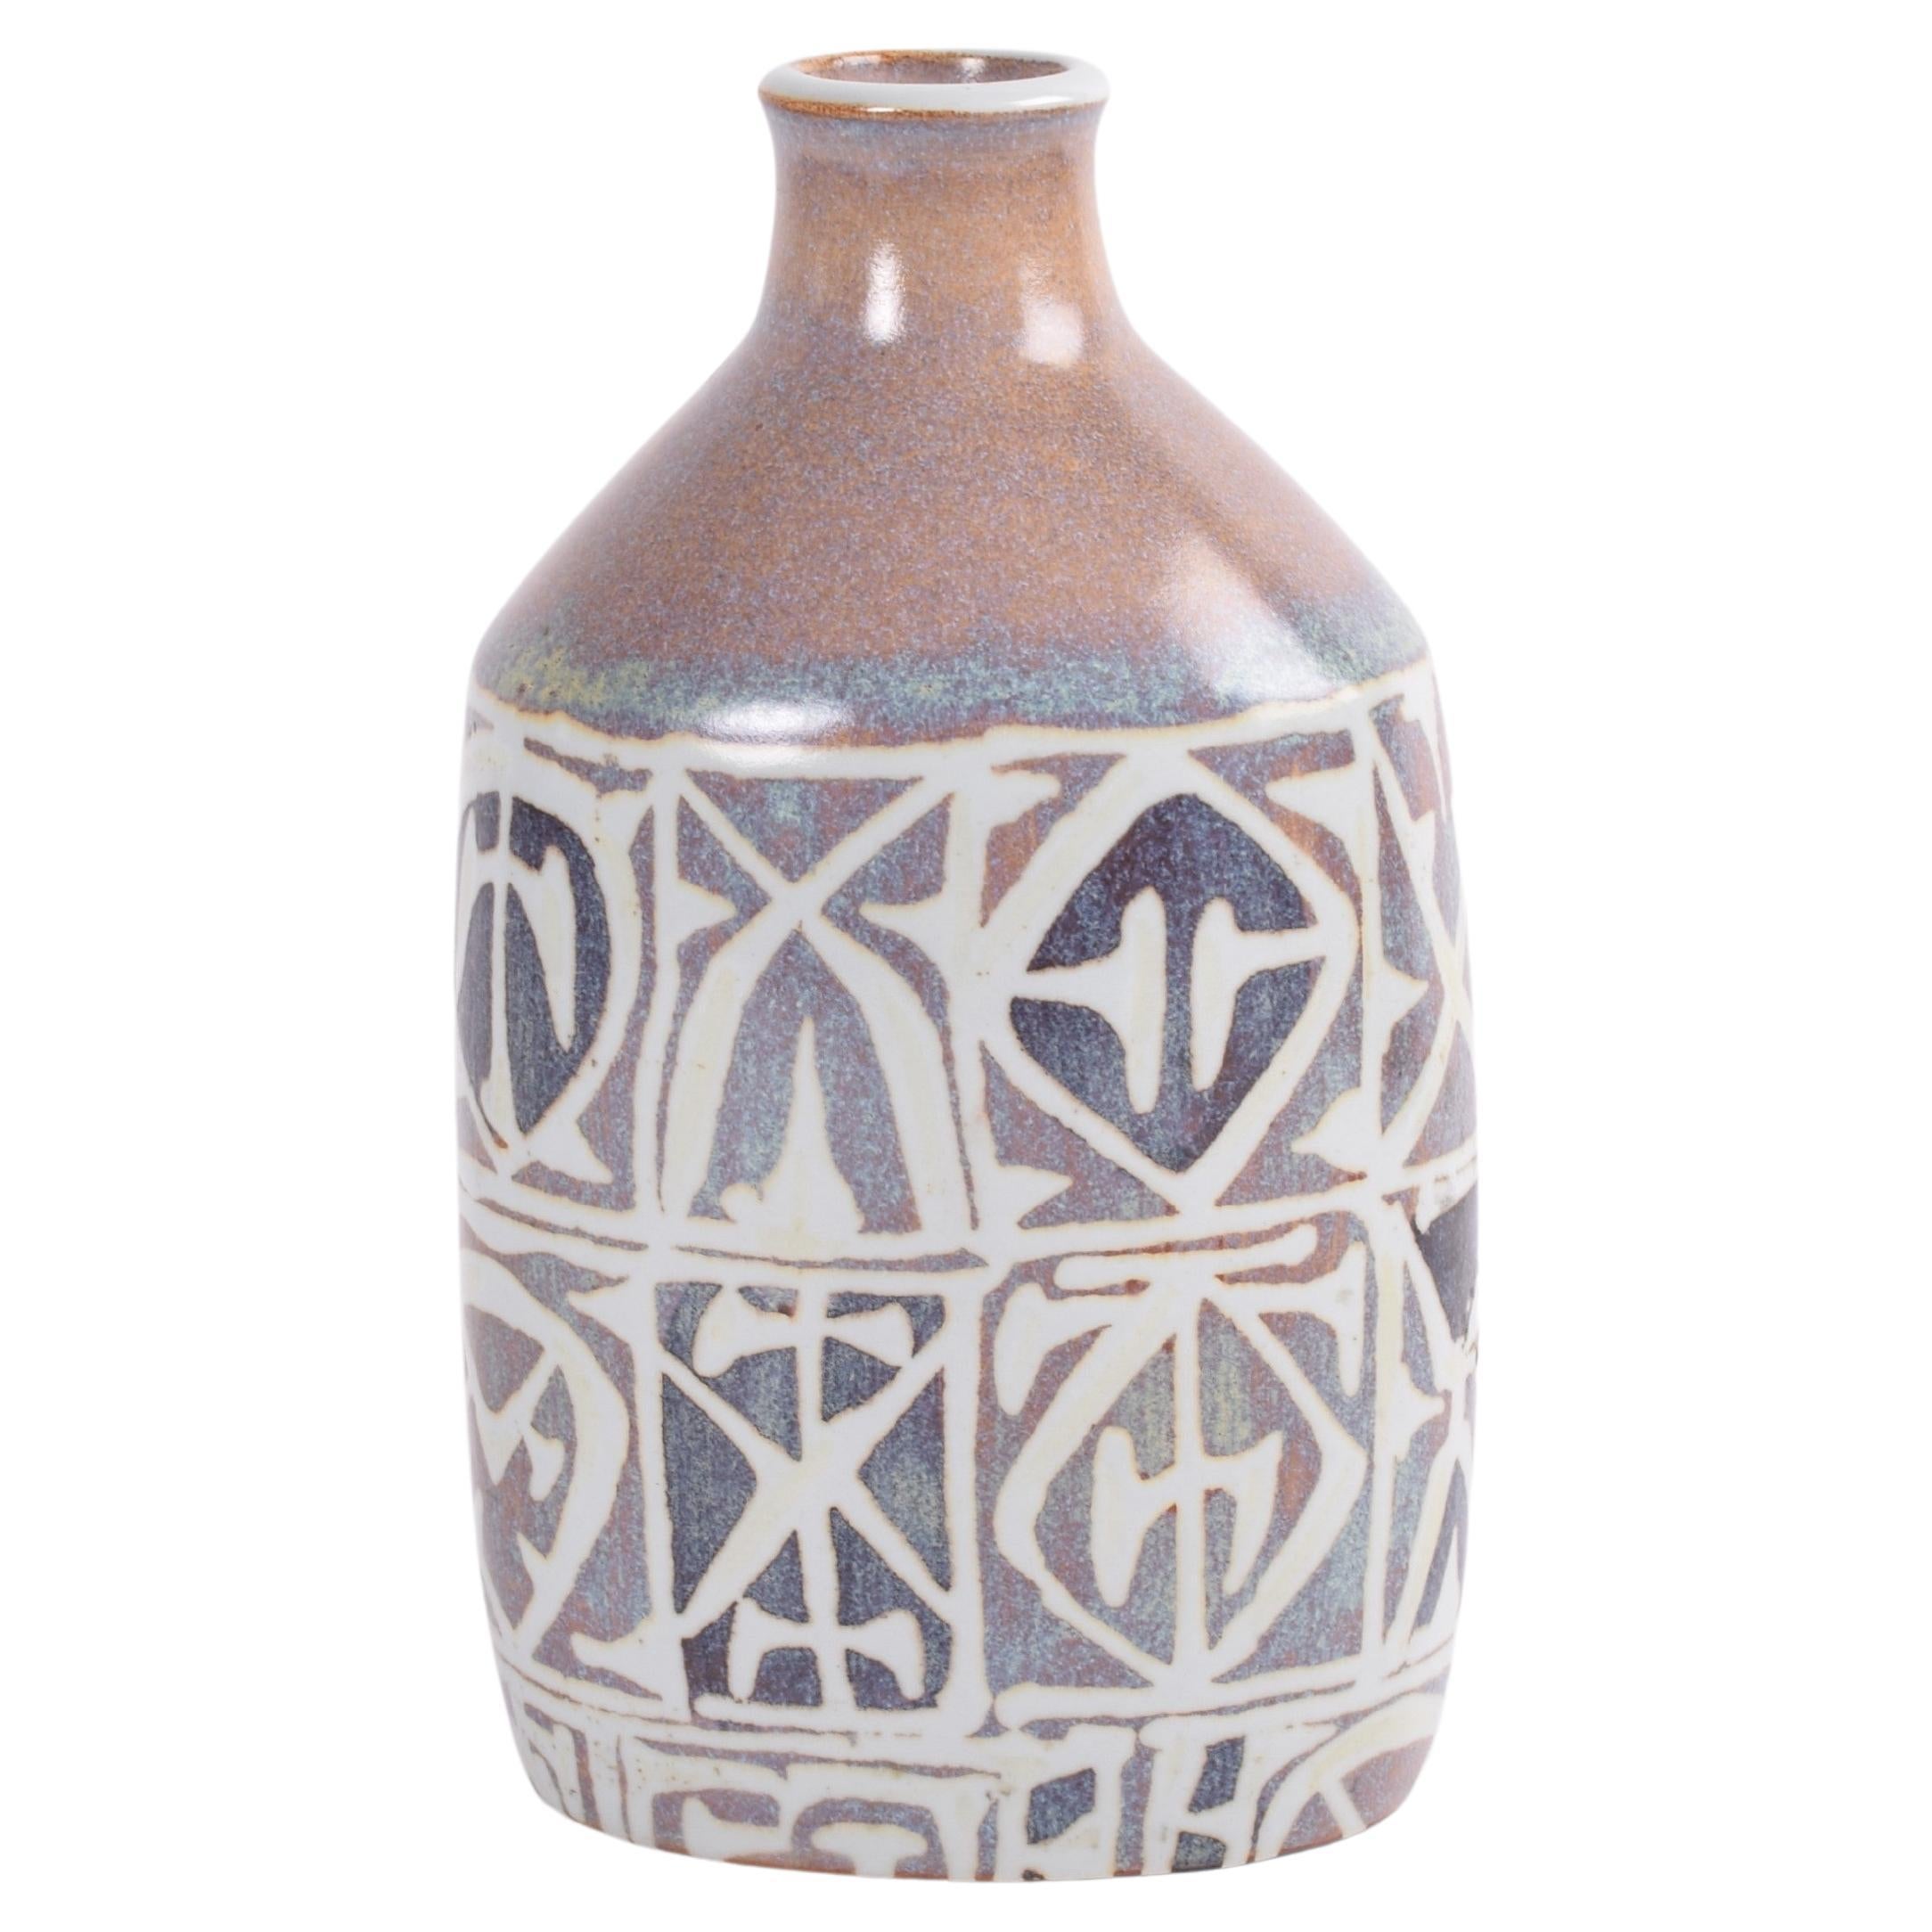 Vase Flask de Nils Thorsson pour Aluminia Baca à décor abstrait, céramique danoise, années 1960